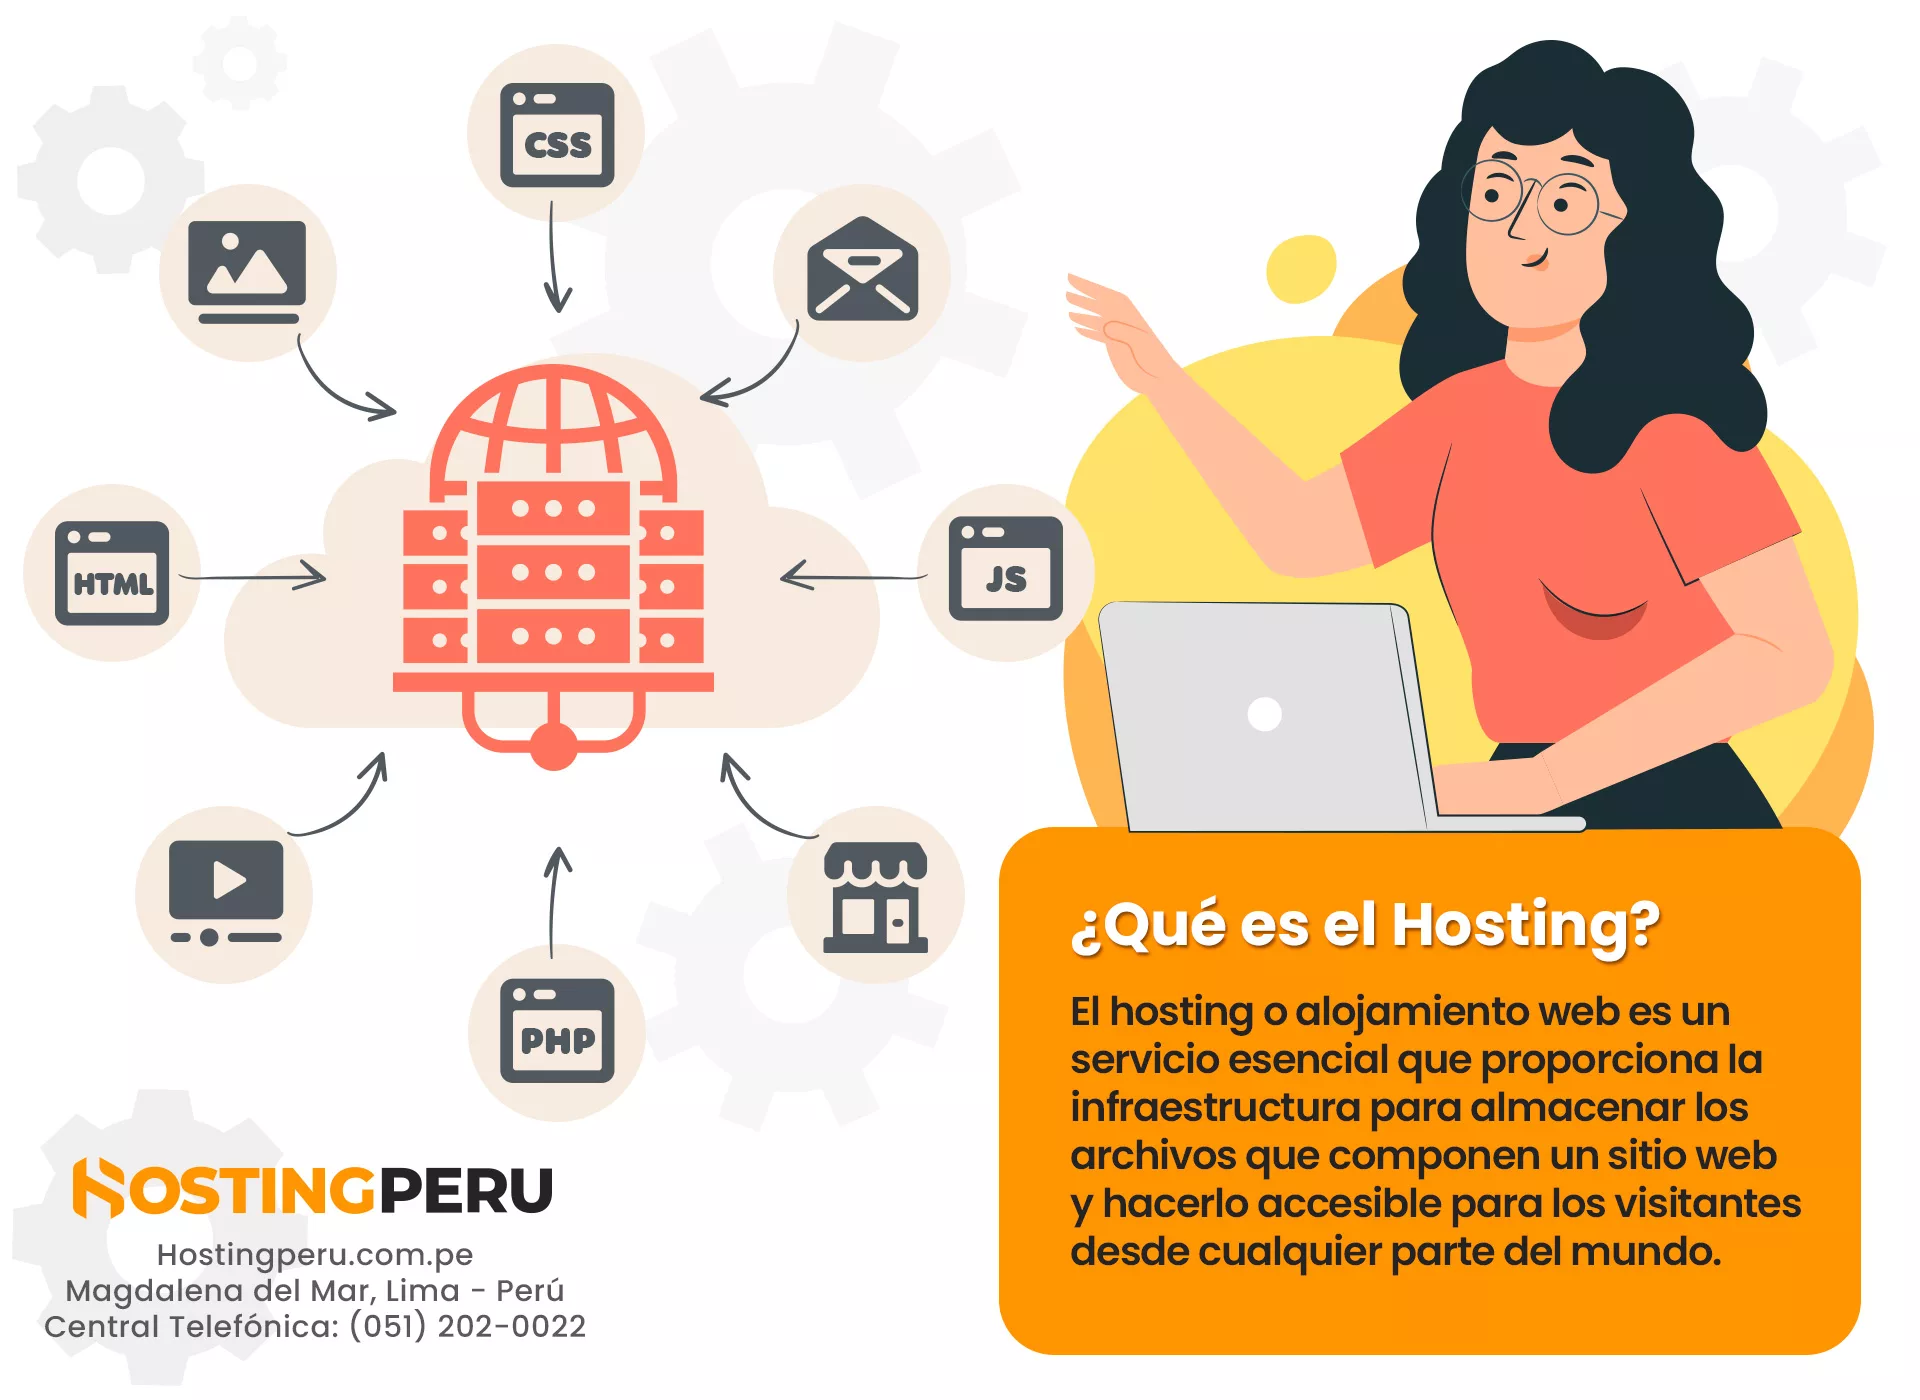 El hosting proporciona la infraestructura para guardar los archivos de un sitio web.